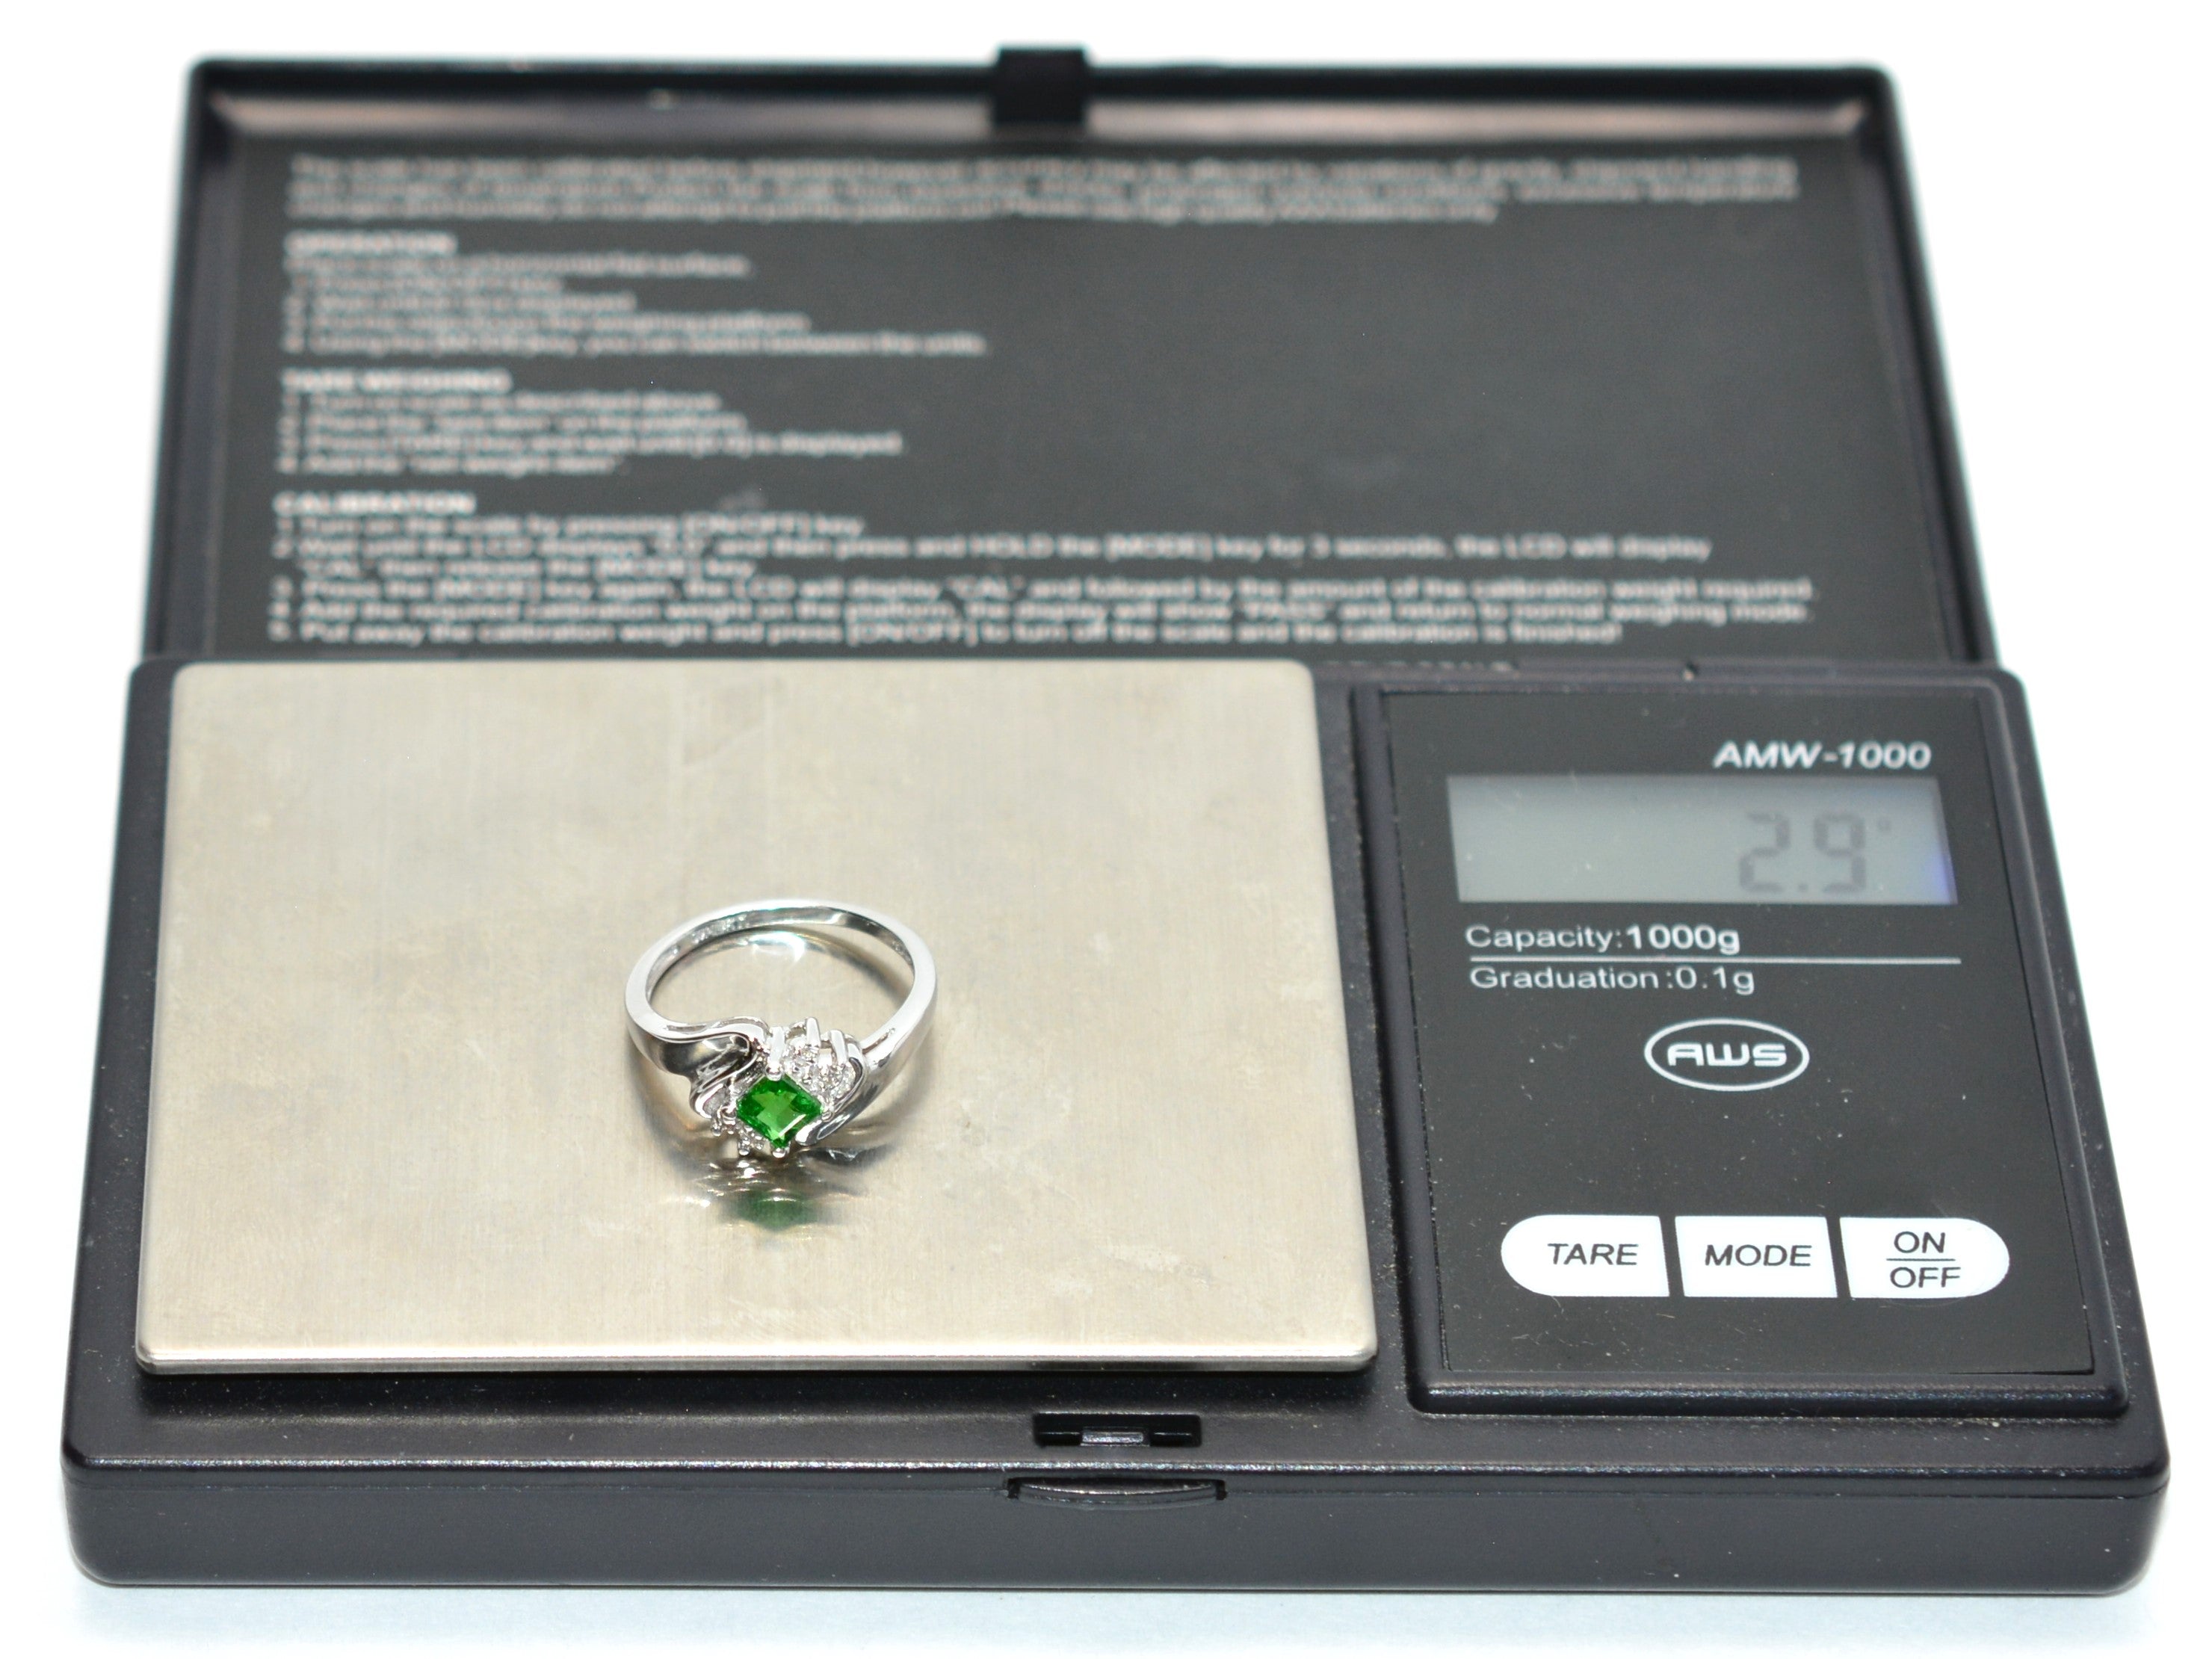 Natural Tsavorite Garnet & Diamond Ring 14K White Gold .57tcw Gemstone Ring Engagement Ring Women's Ring Wedding Ring Bridal Jewelry Green